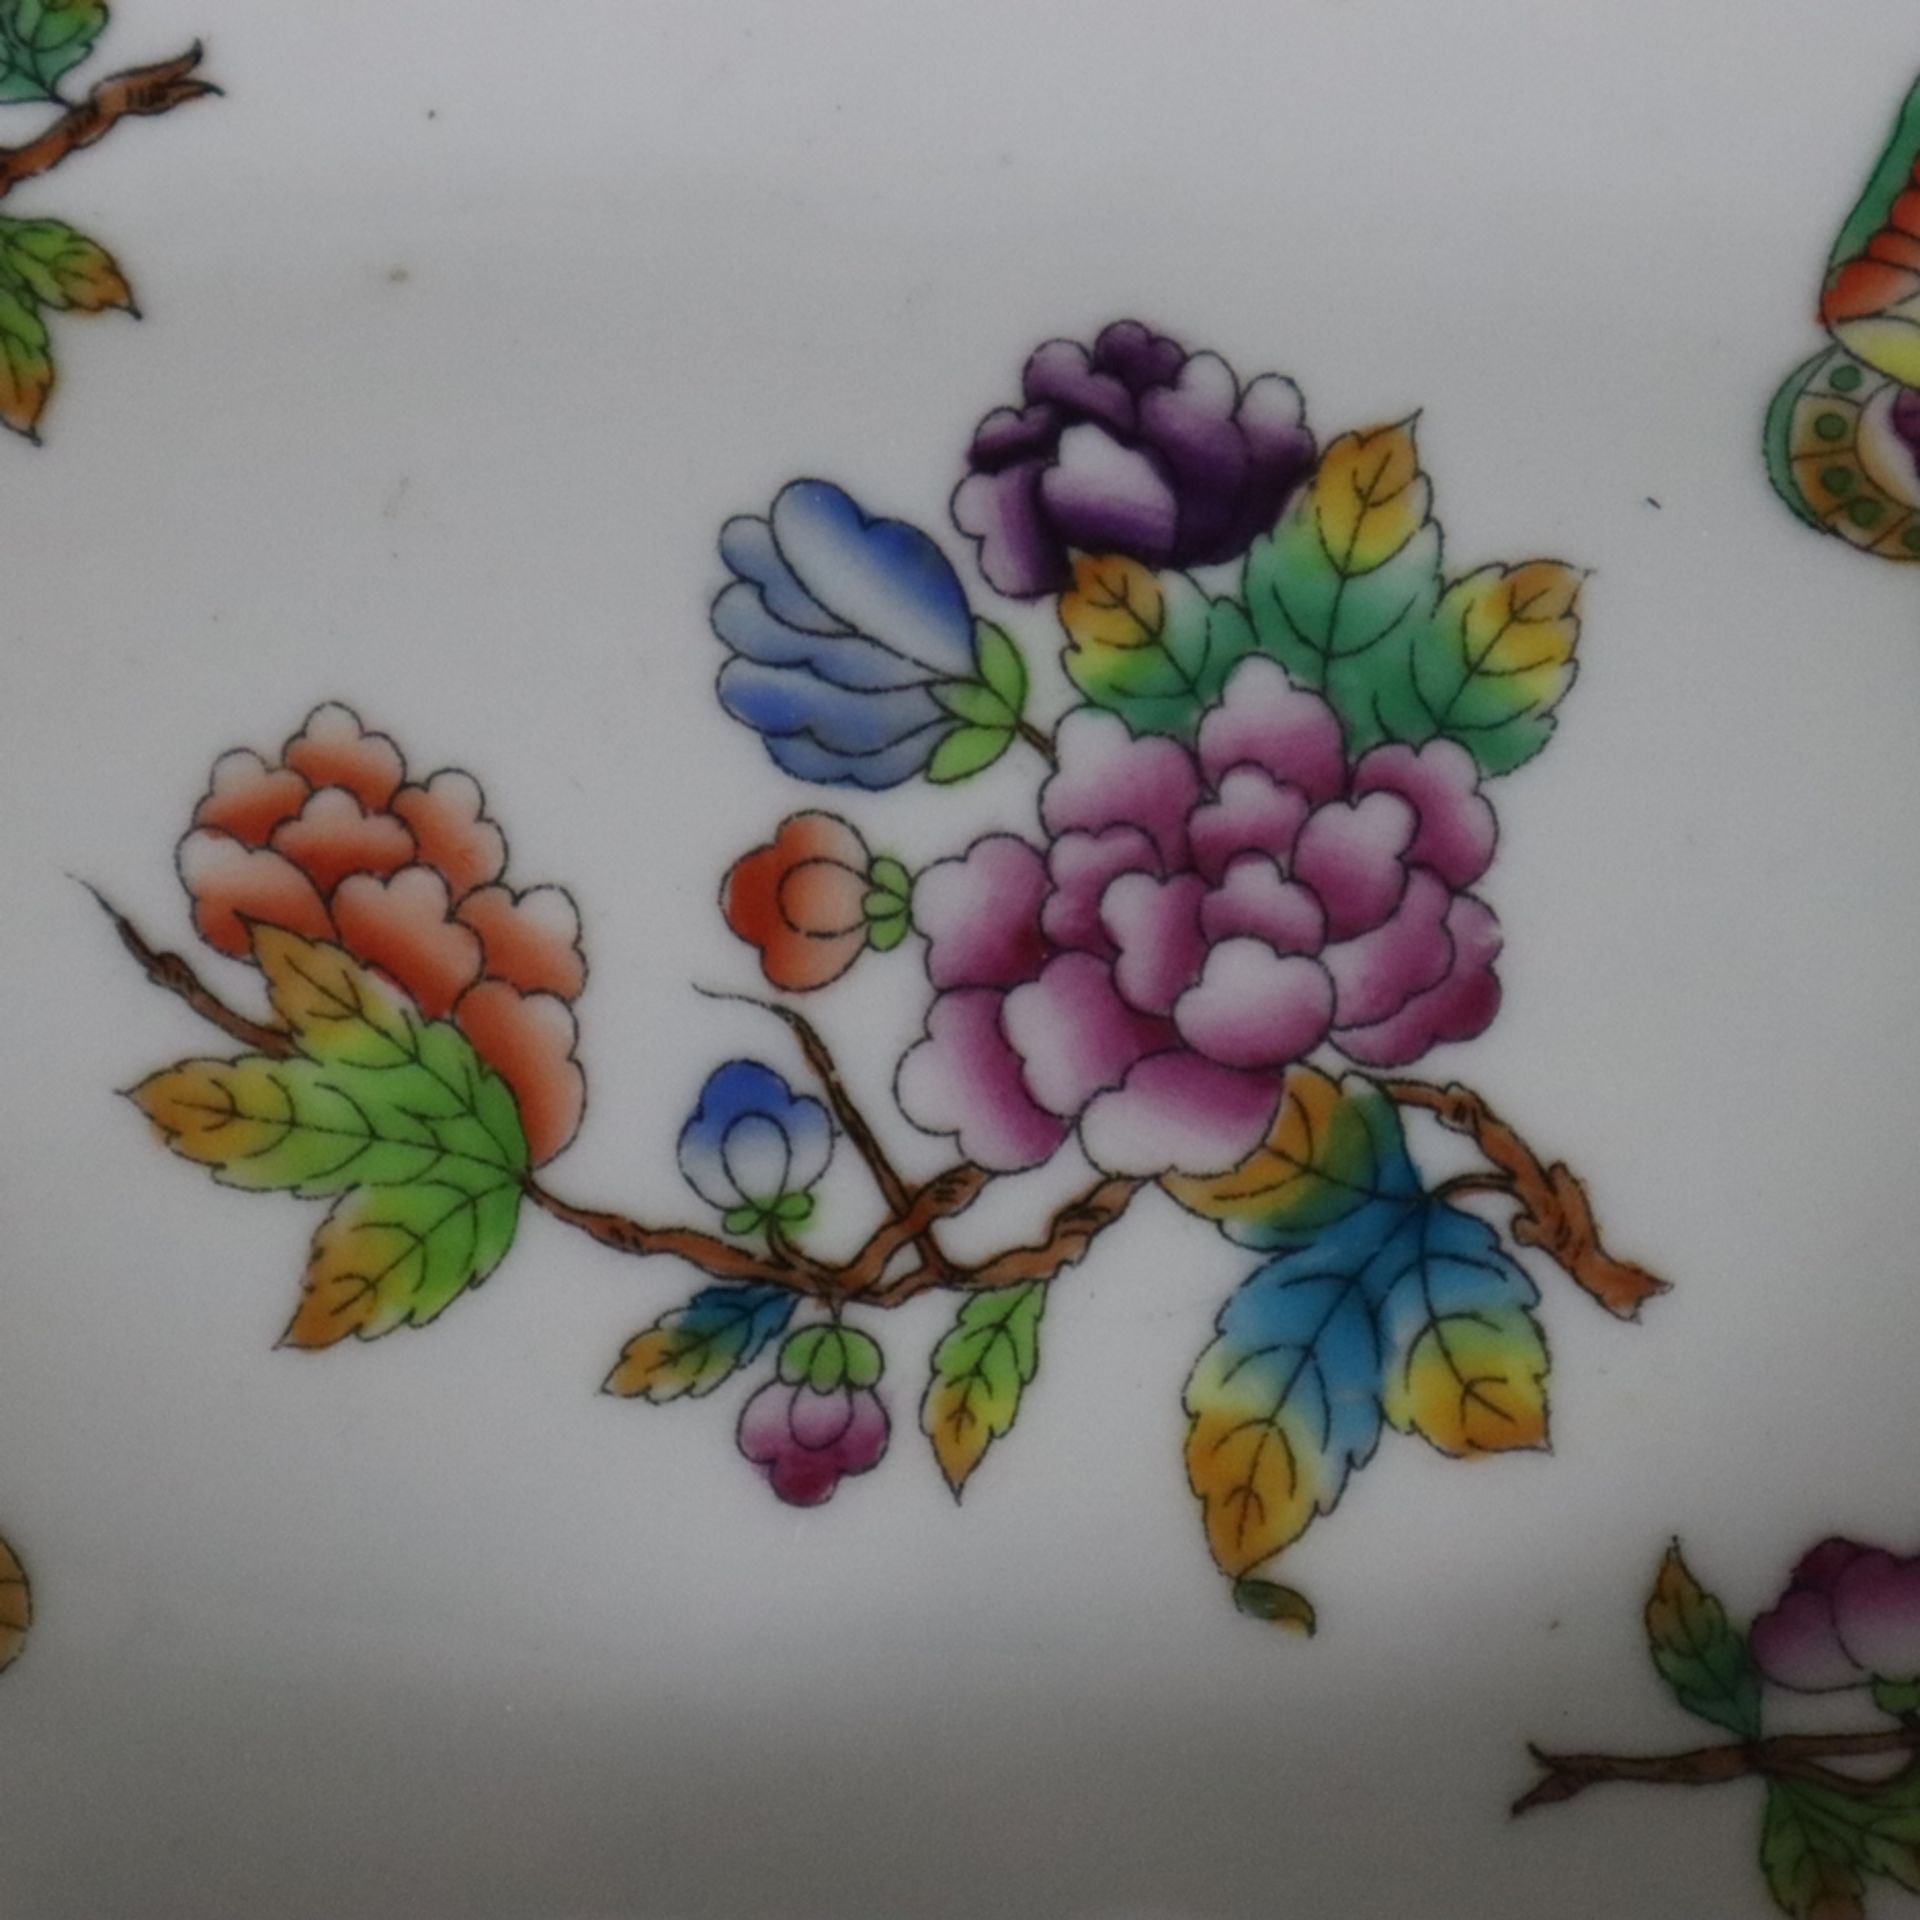 Raucherset Teile - Herend, Ungarn, Porzellan, Dekor "Victoria" mit Blumen- und Schmetterlingsmotive - Bild 7 aus 8